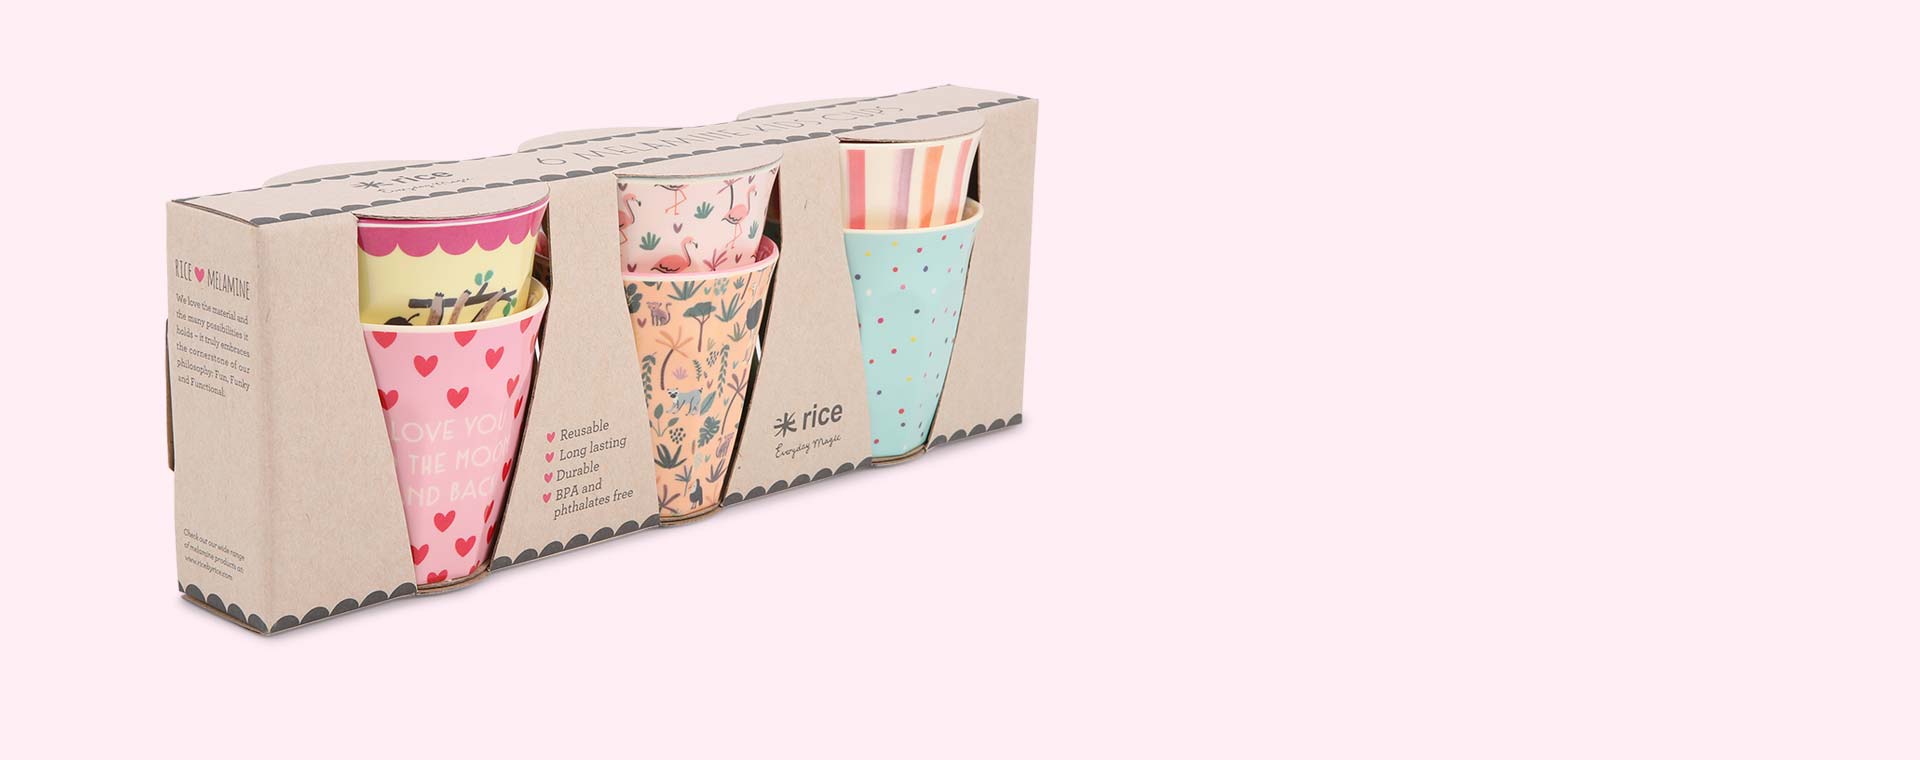 Funky Pink Prints Rice Kids Melamine Printed Cup Set